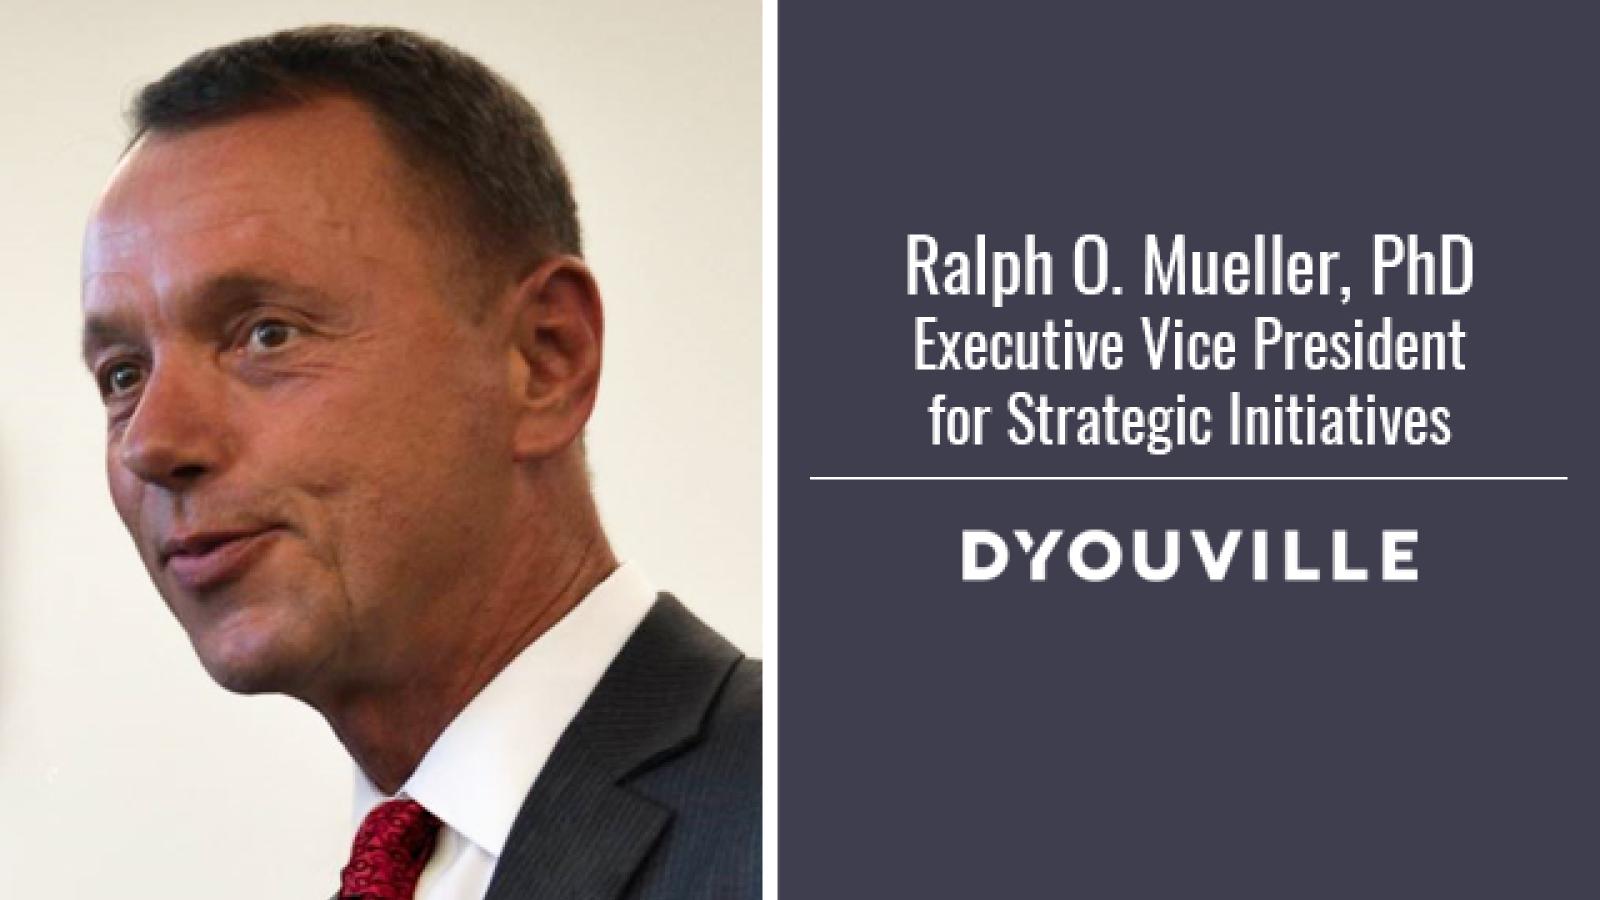 DâYouville Appoints Executive Vice President for Strategic Initiatives